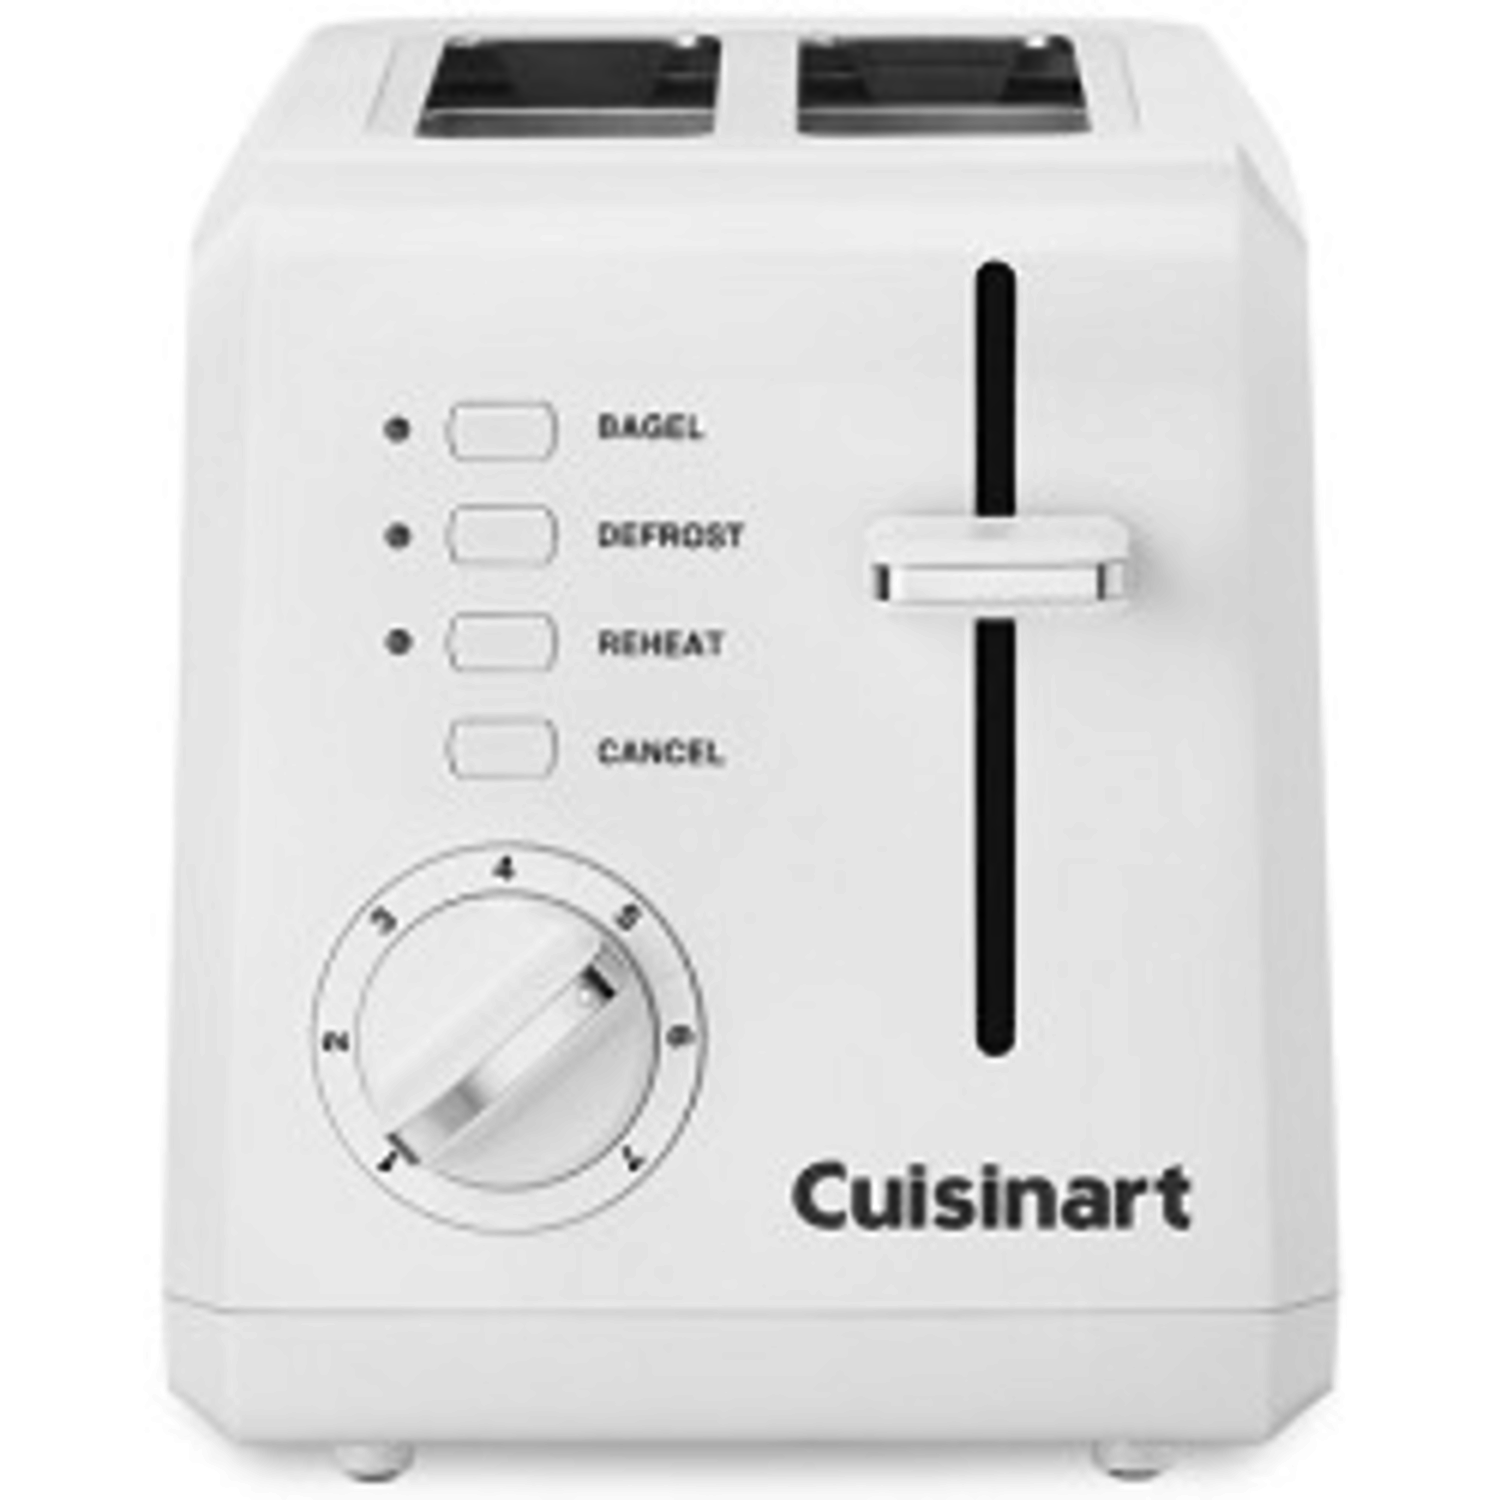 https://cdn.shoplightspeed.com/shops/633447/files/18103805/1500x4000x3/cuisinart-cuisinart-white-2-slice-toaster.jpg